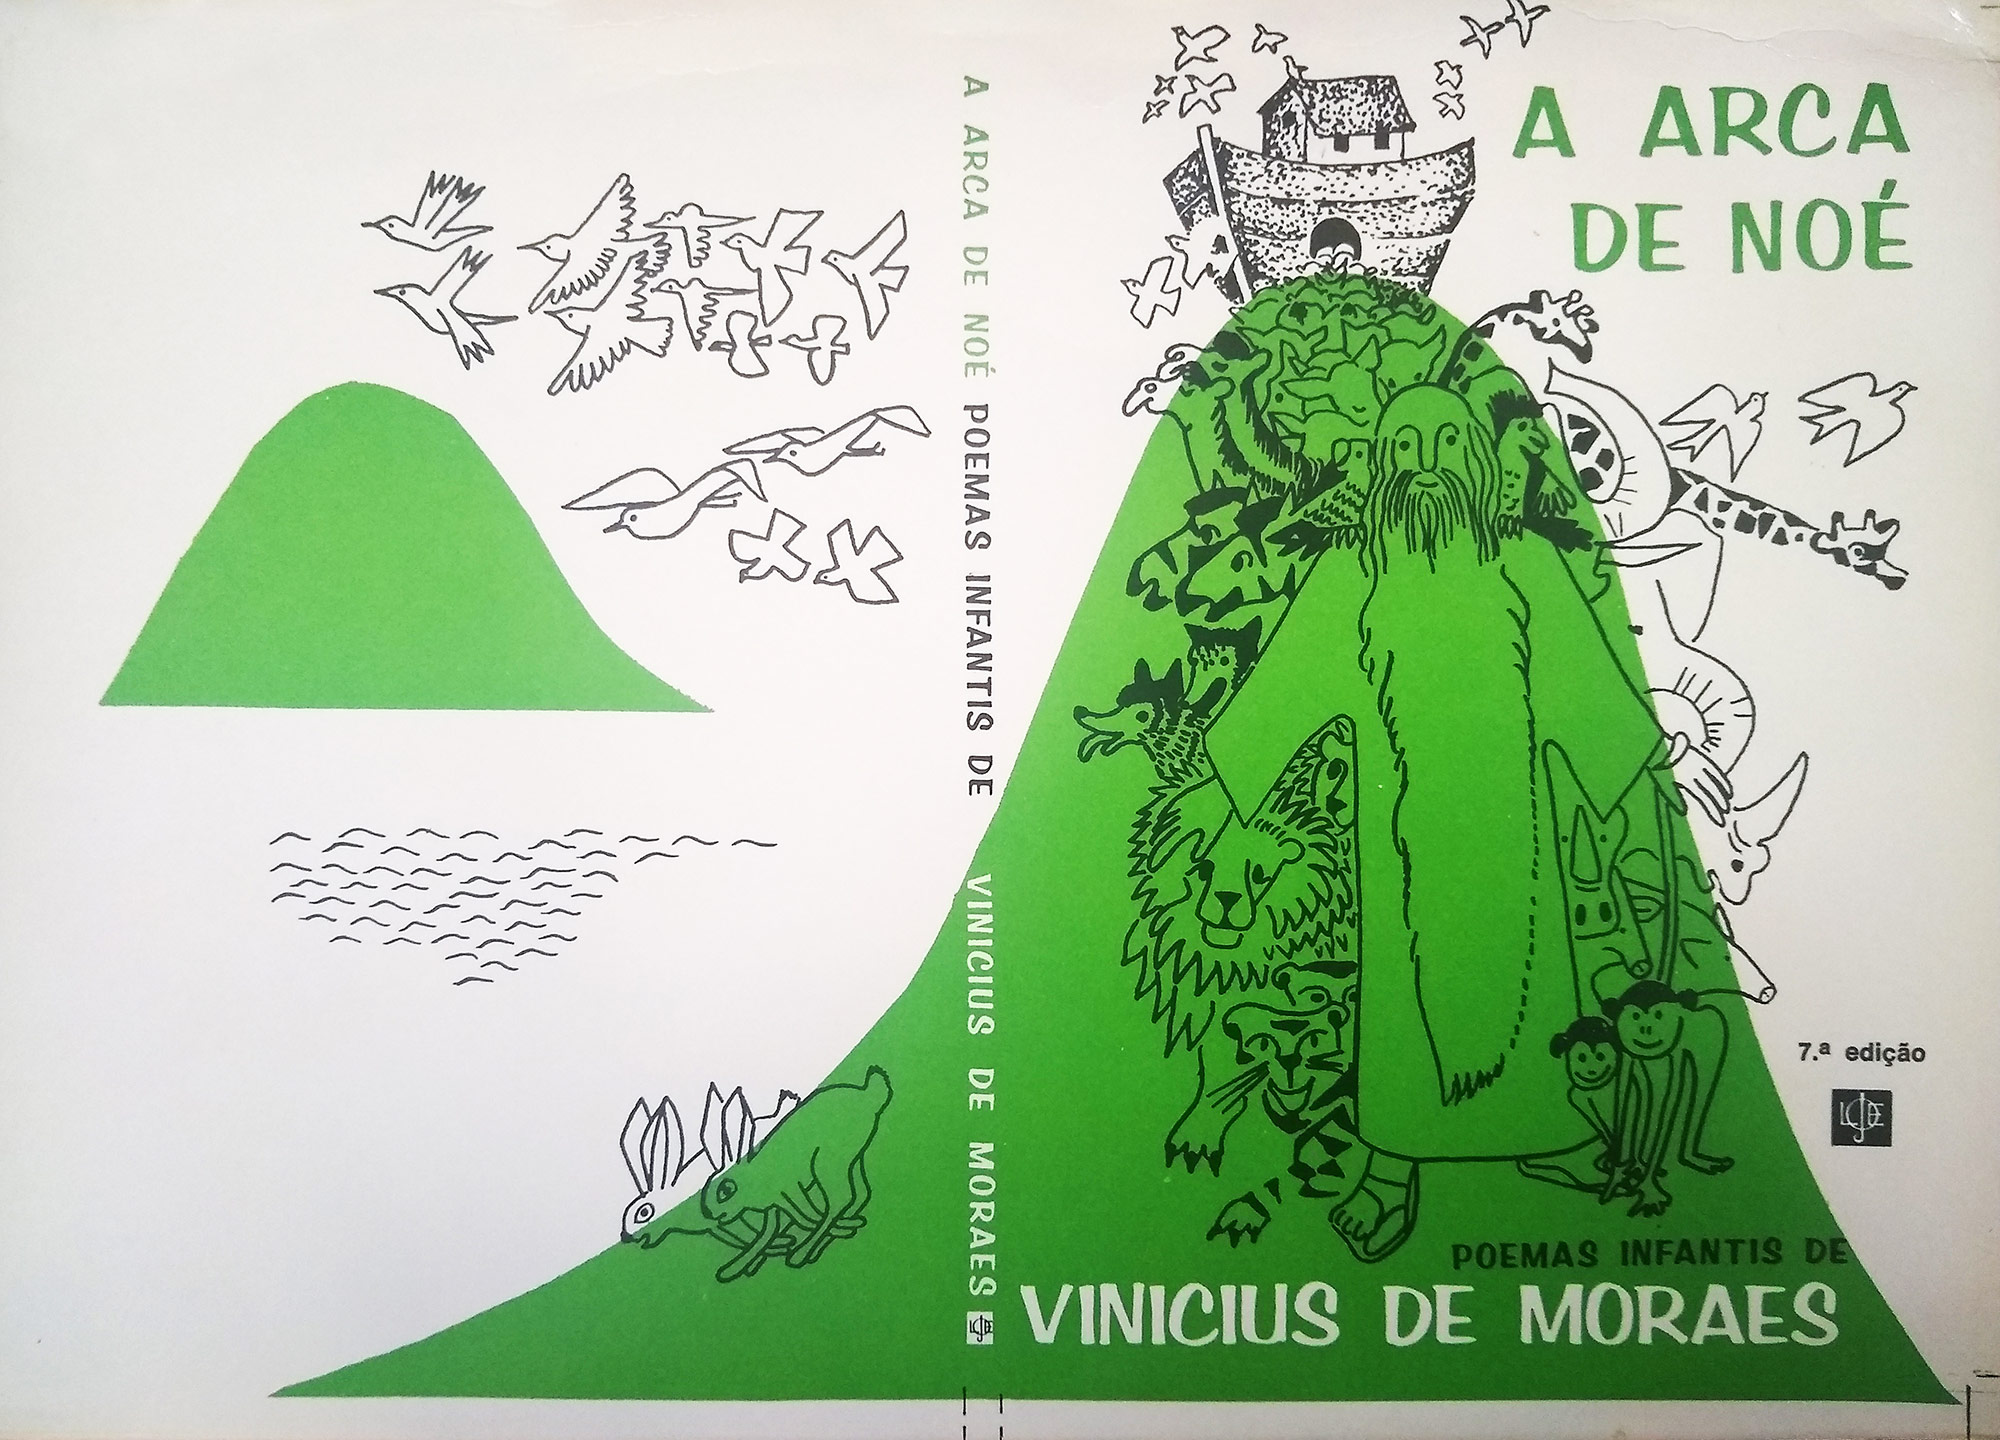 Capa da obra Arca de Noé, de Vinicius de Moraes.